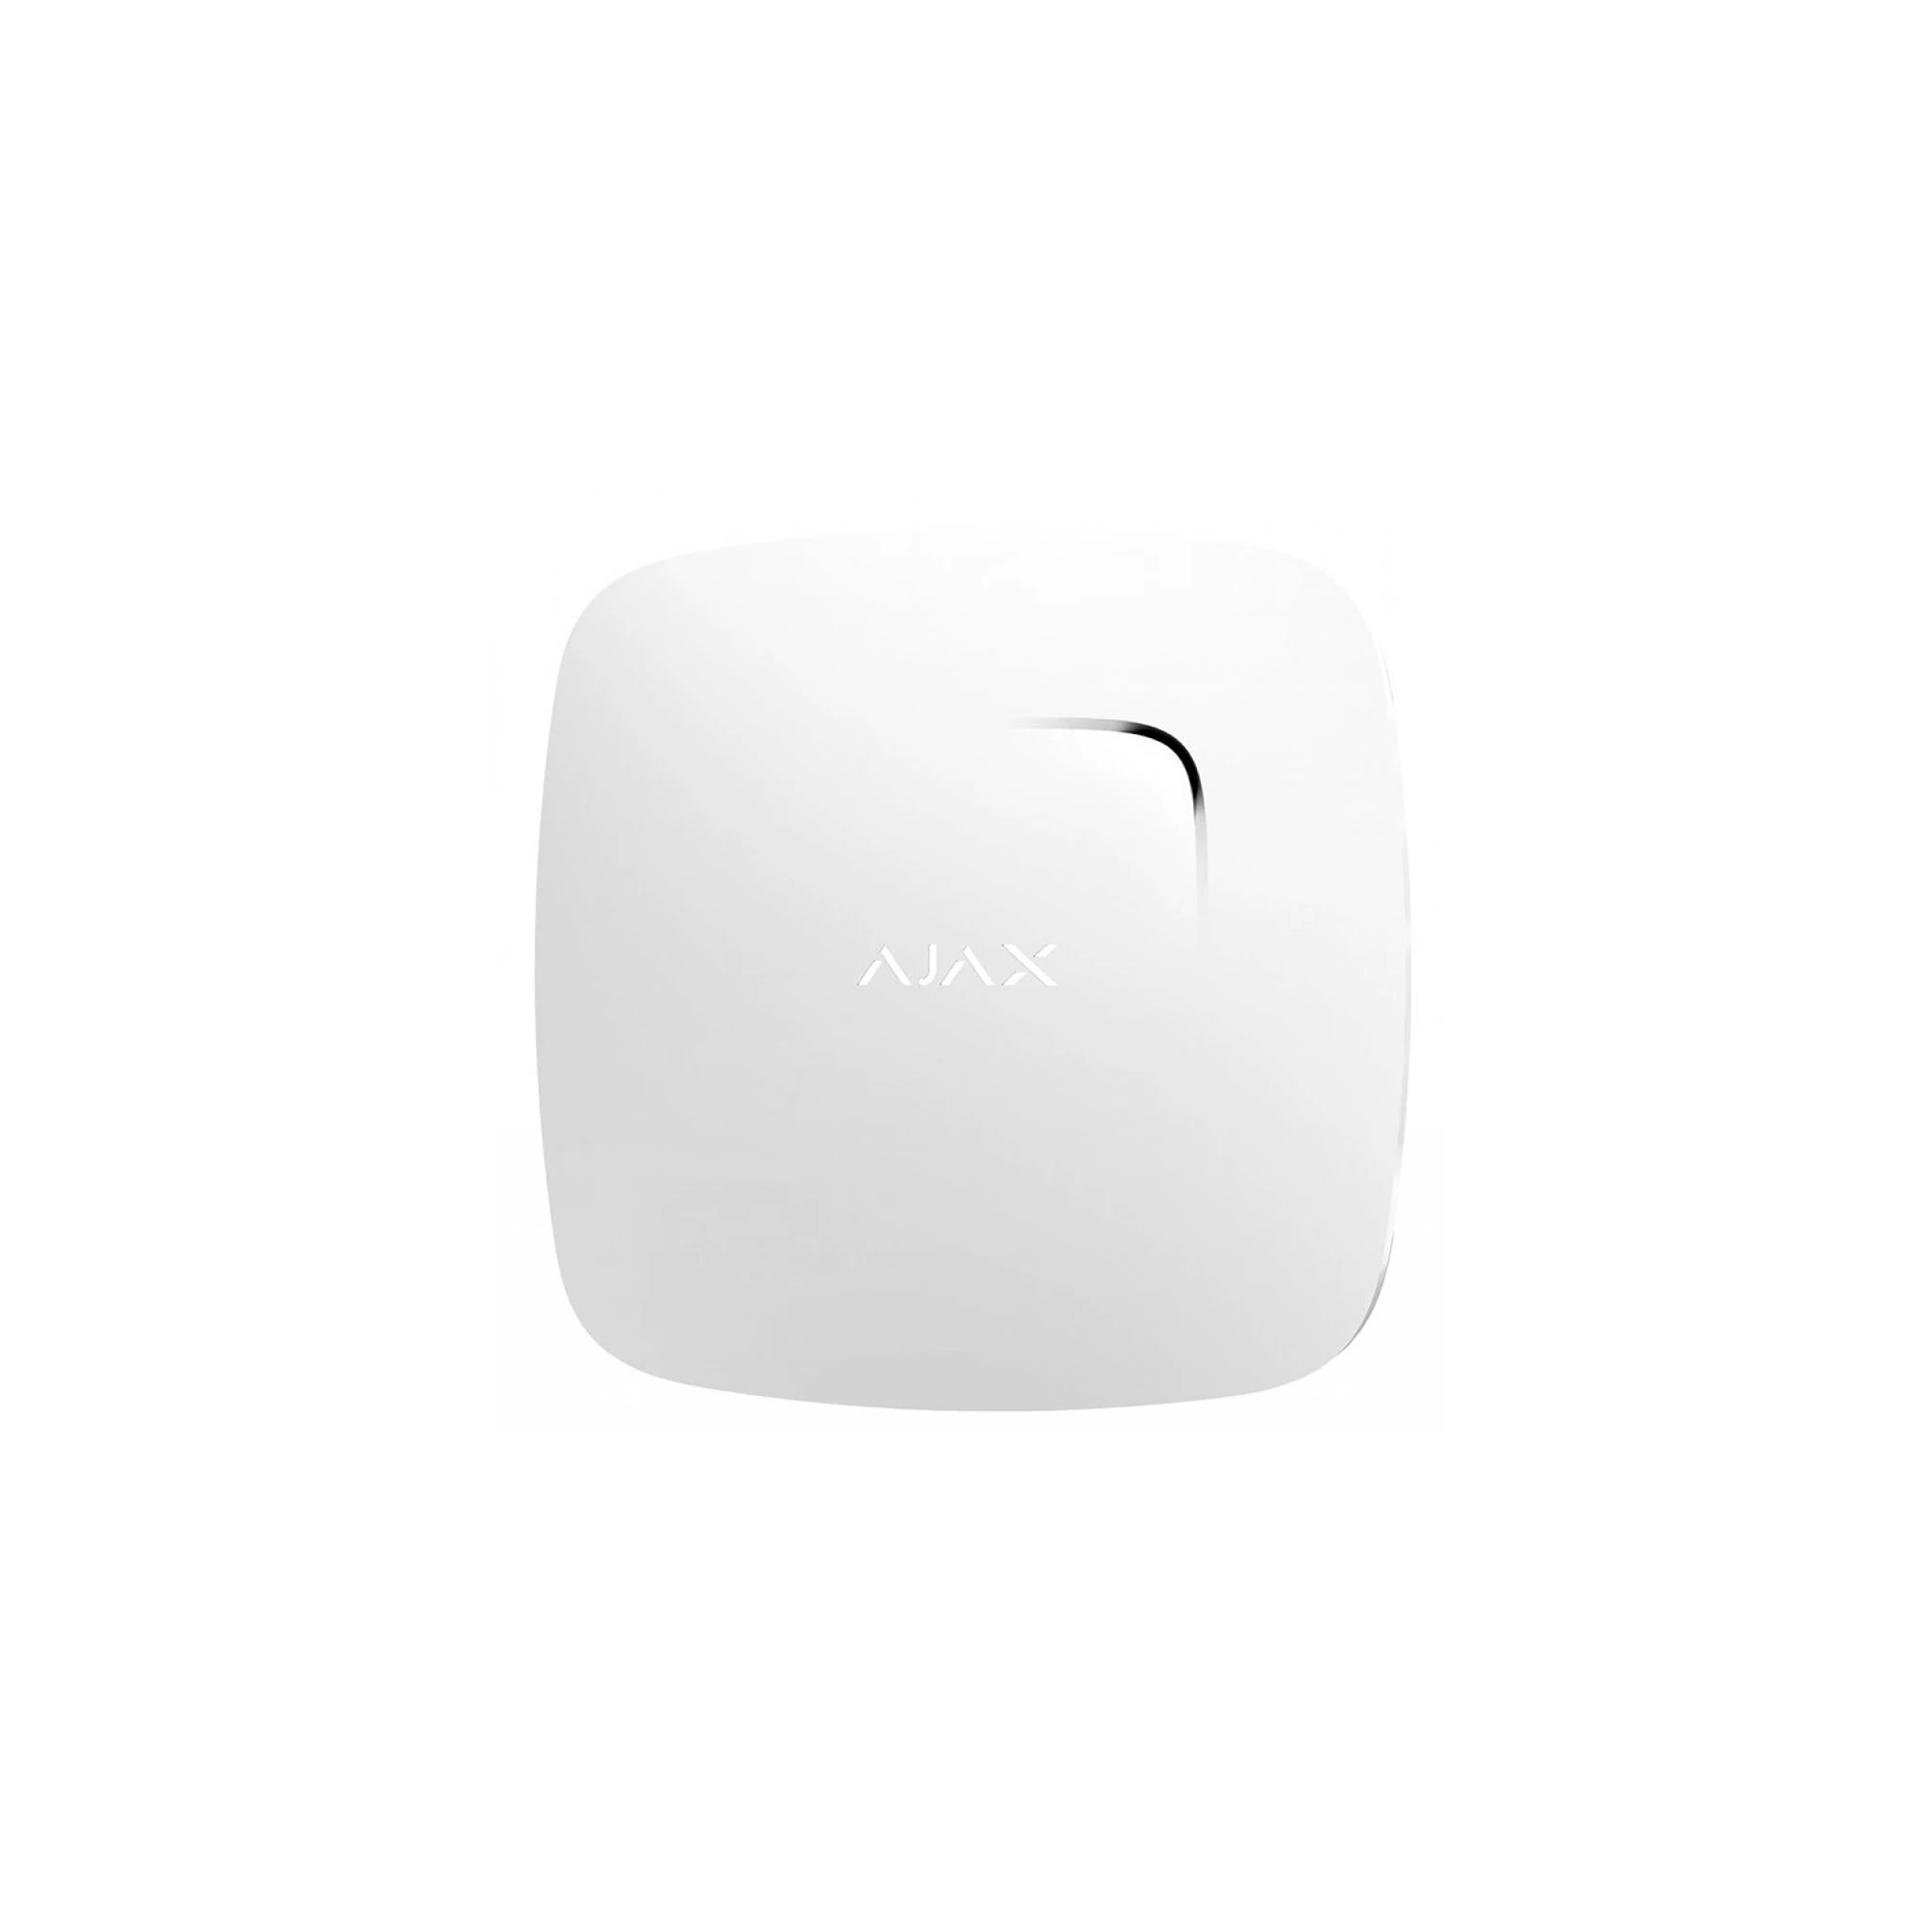 Ajax FireProtect Plus White - бездротовий пожежний датчик з сенсорами температури і чадного газу